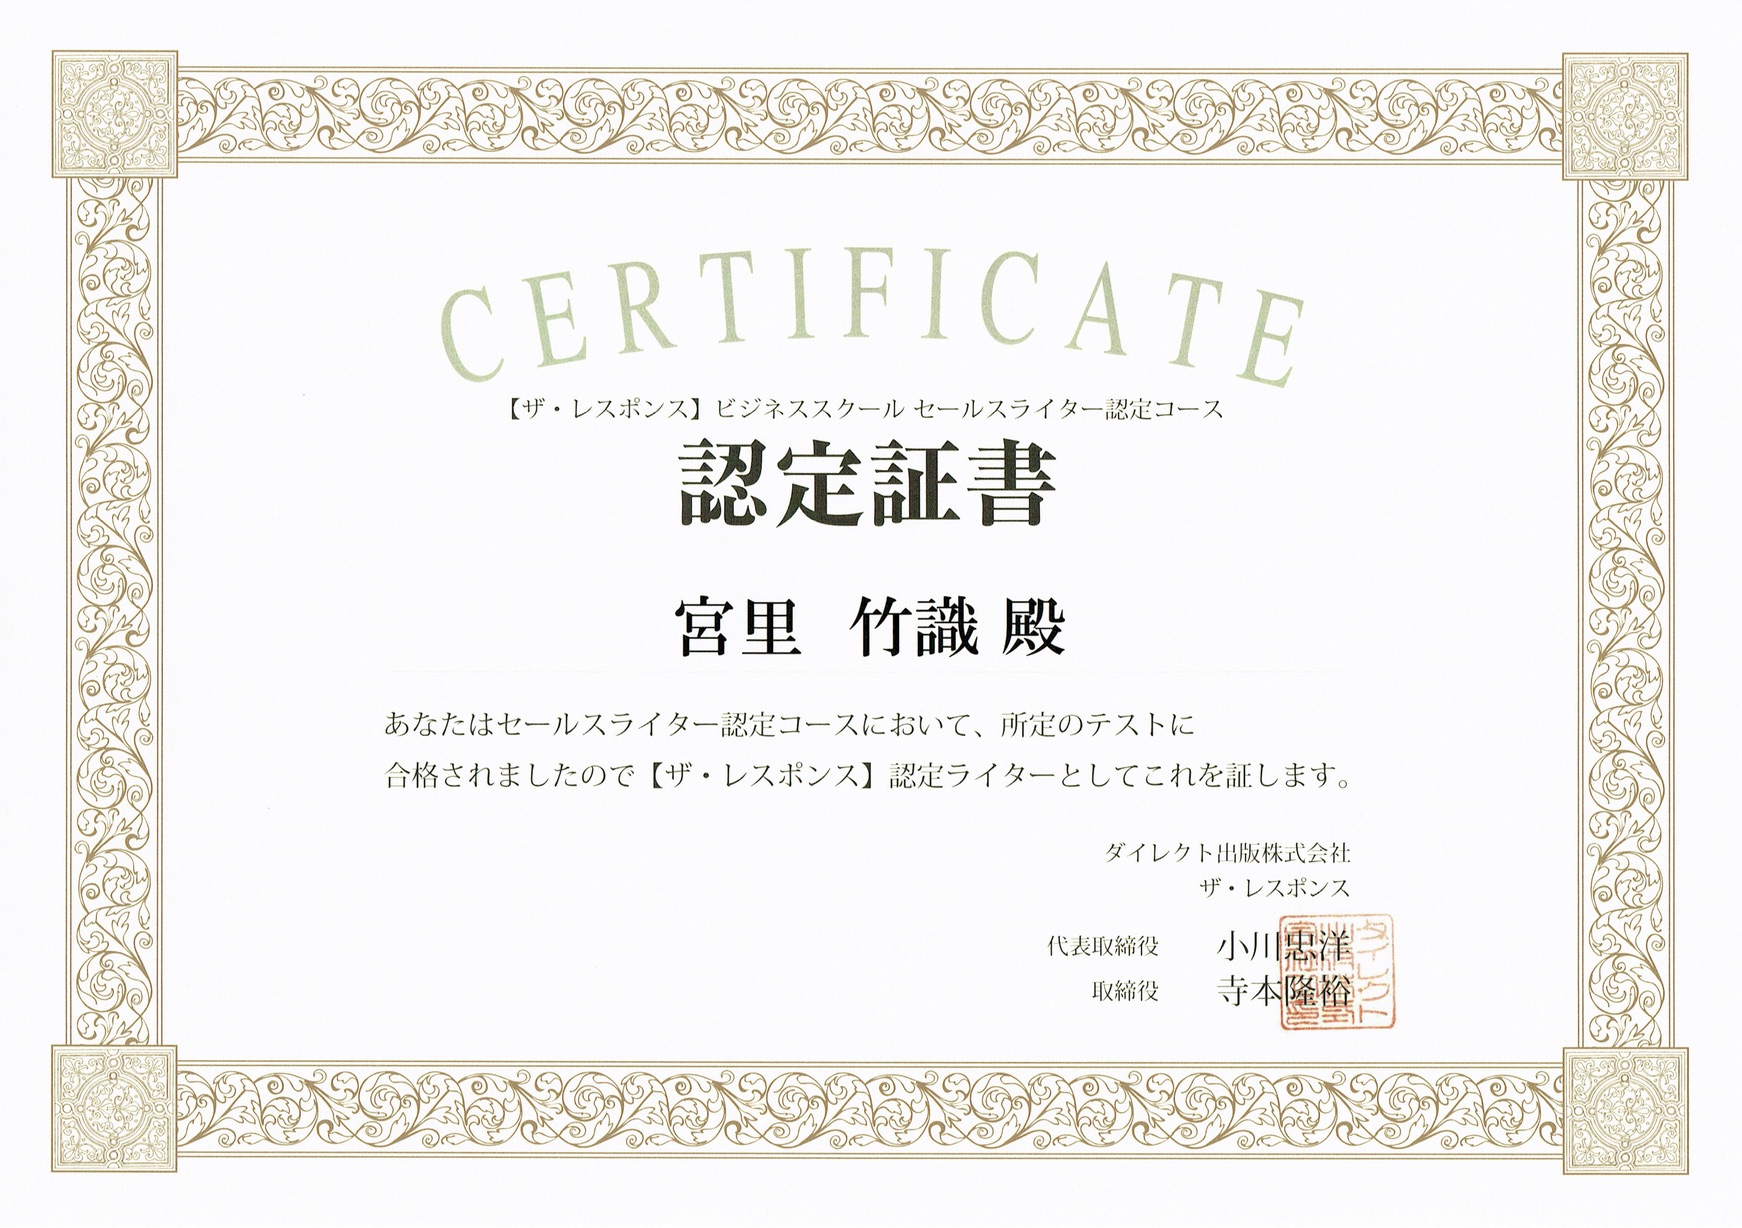 講座資料【☆ALOHA☆専用】ダイレクト出版 セールスライター認定コース 